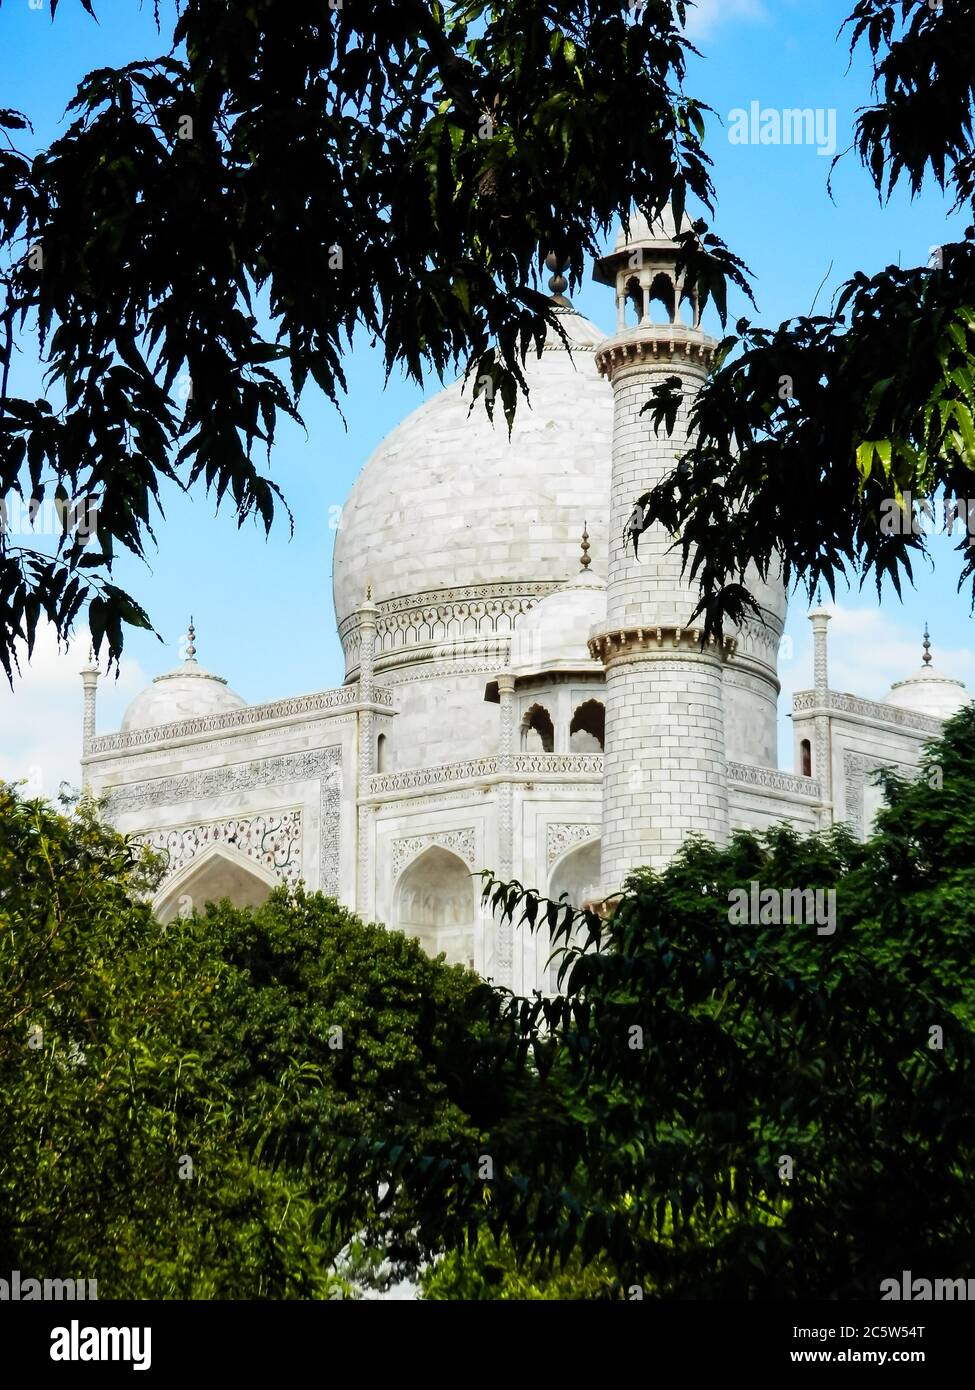 Taj Mahal, Agra, Uttar Pradesh, India settentrionale. Una delle nuove sette meraviglie del mondo e uno dei siti patrimonio mondiale dell'UNESCO più visitati dell'India. Foto Stock